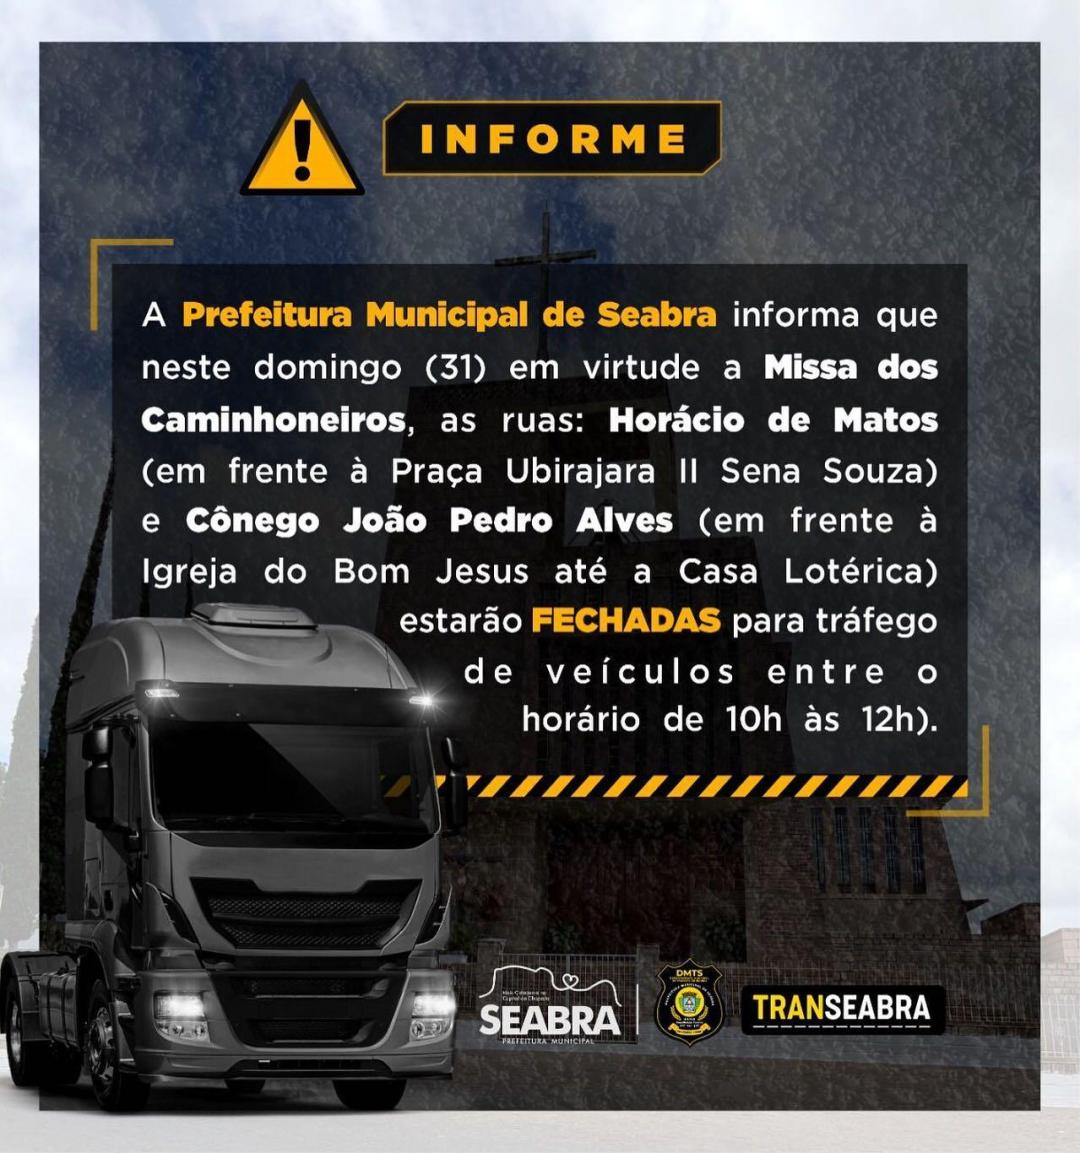 Informe! As ruas Horácio de Matos e Cônego João Pedro Alves estarão FECHADAS para tráfego de veículos